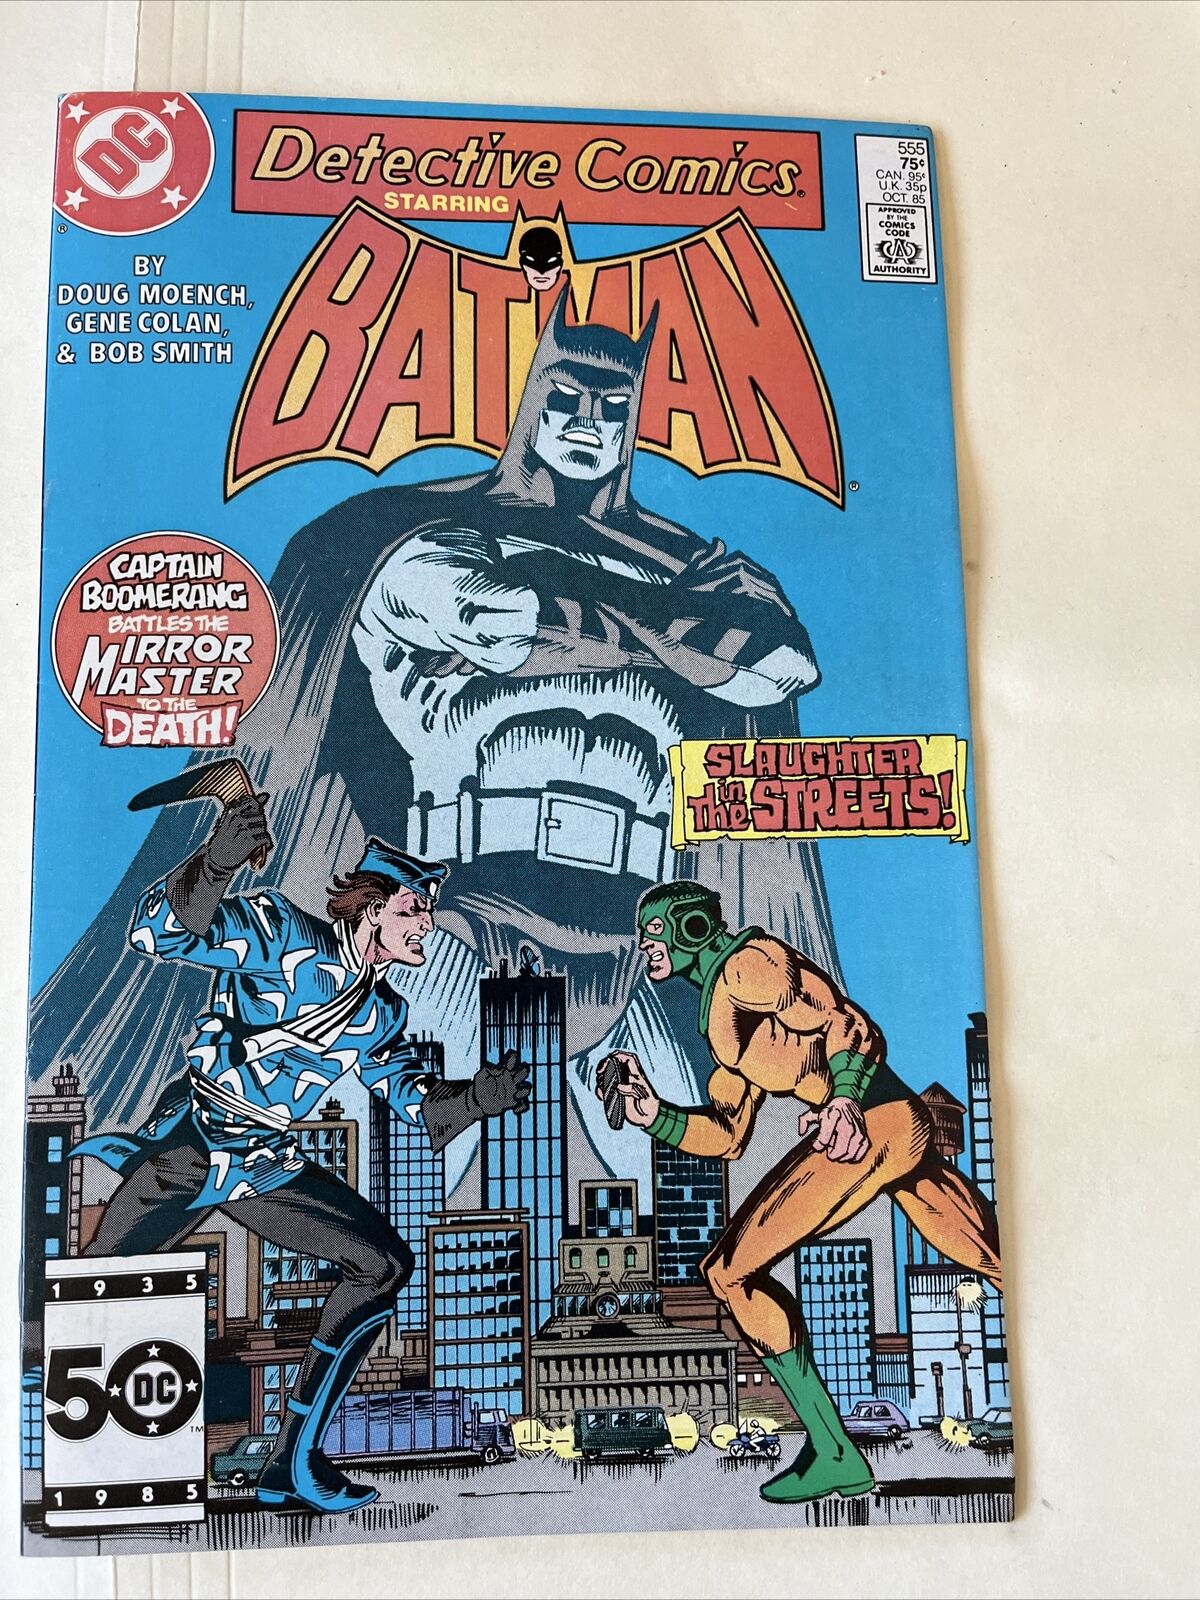 Detective Comics #555 DC COMICS OCT 1986 Batman Capt. Boomerang Mirror Master